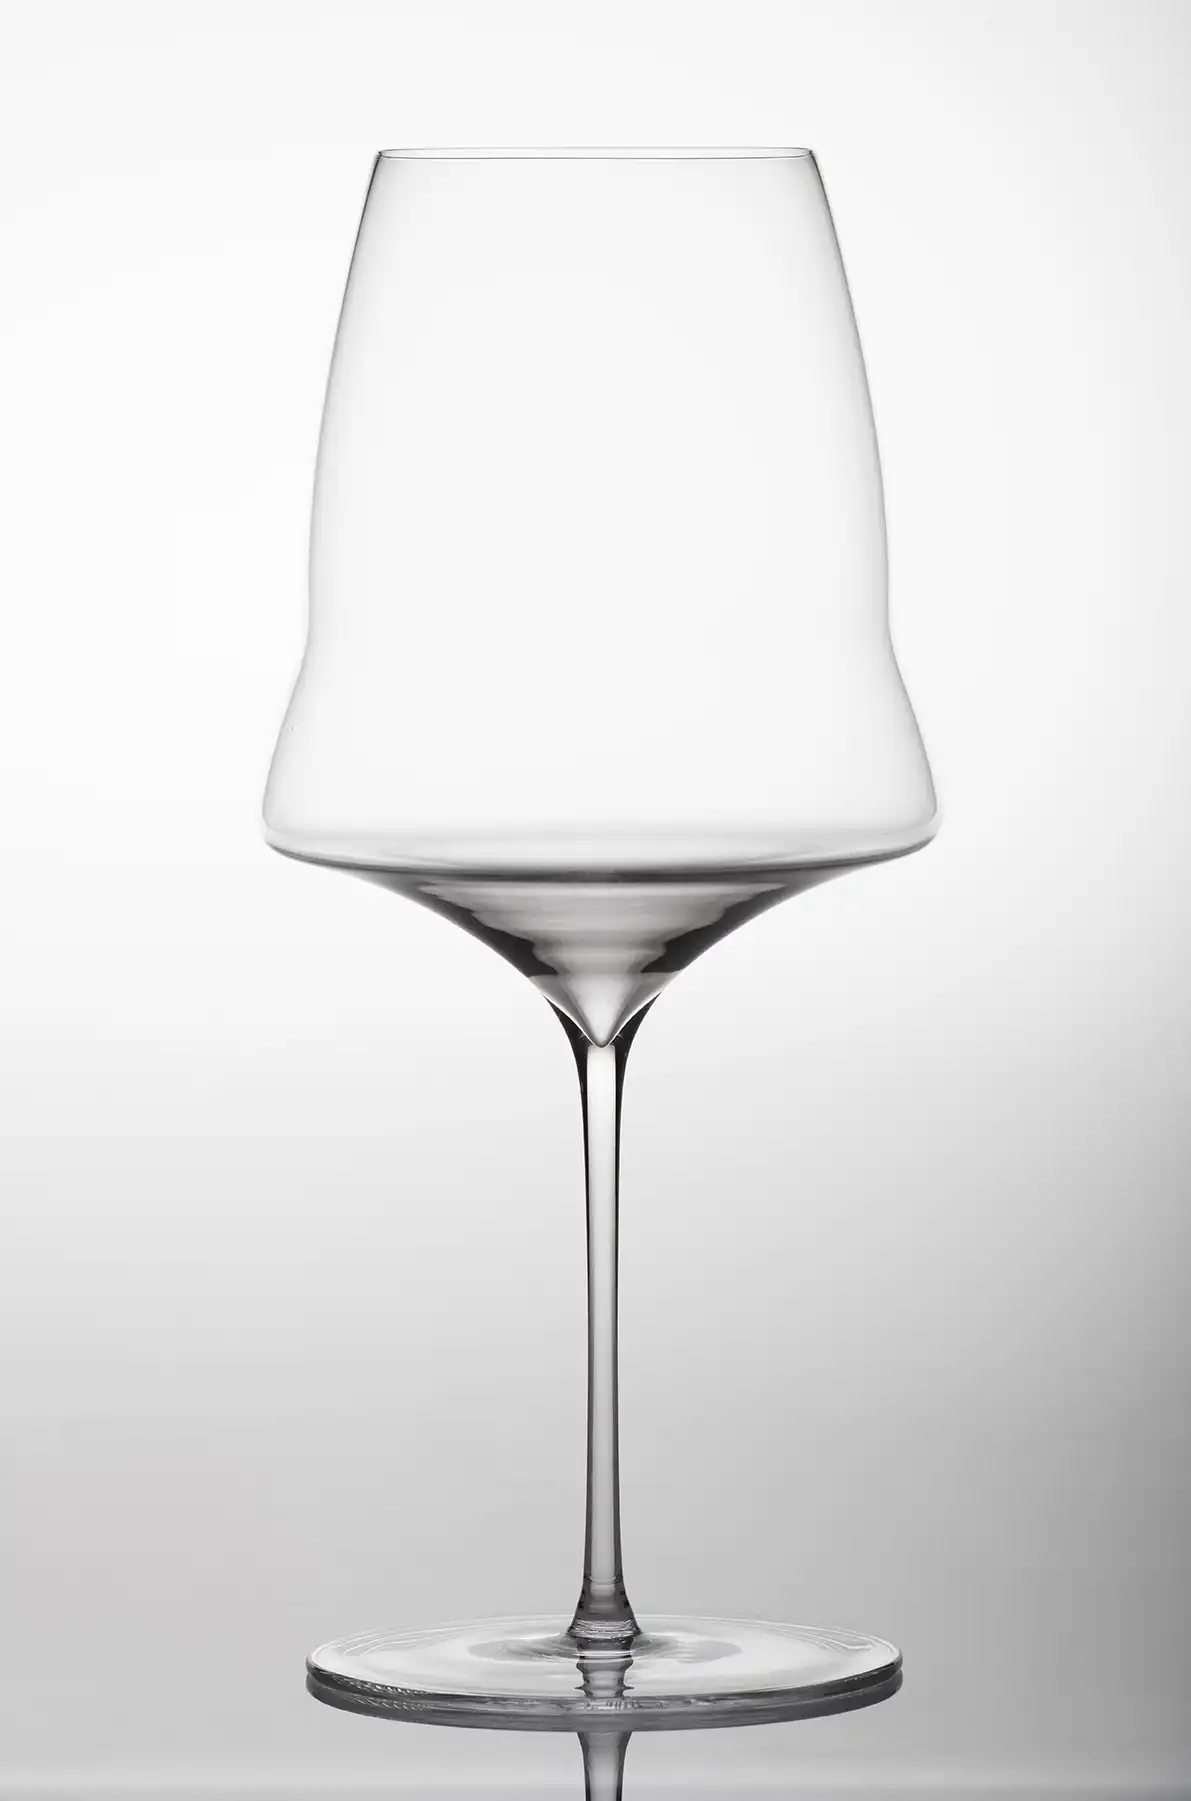 2012 Alles | Wein Vega Unico Sicilia